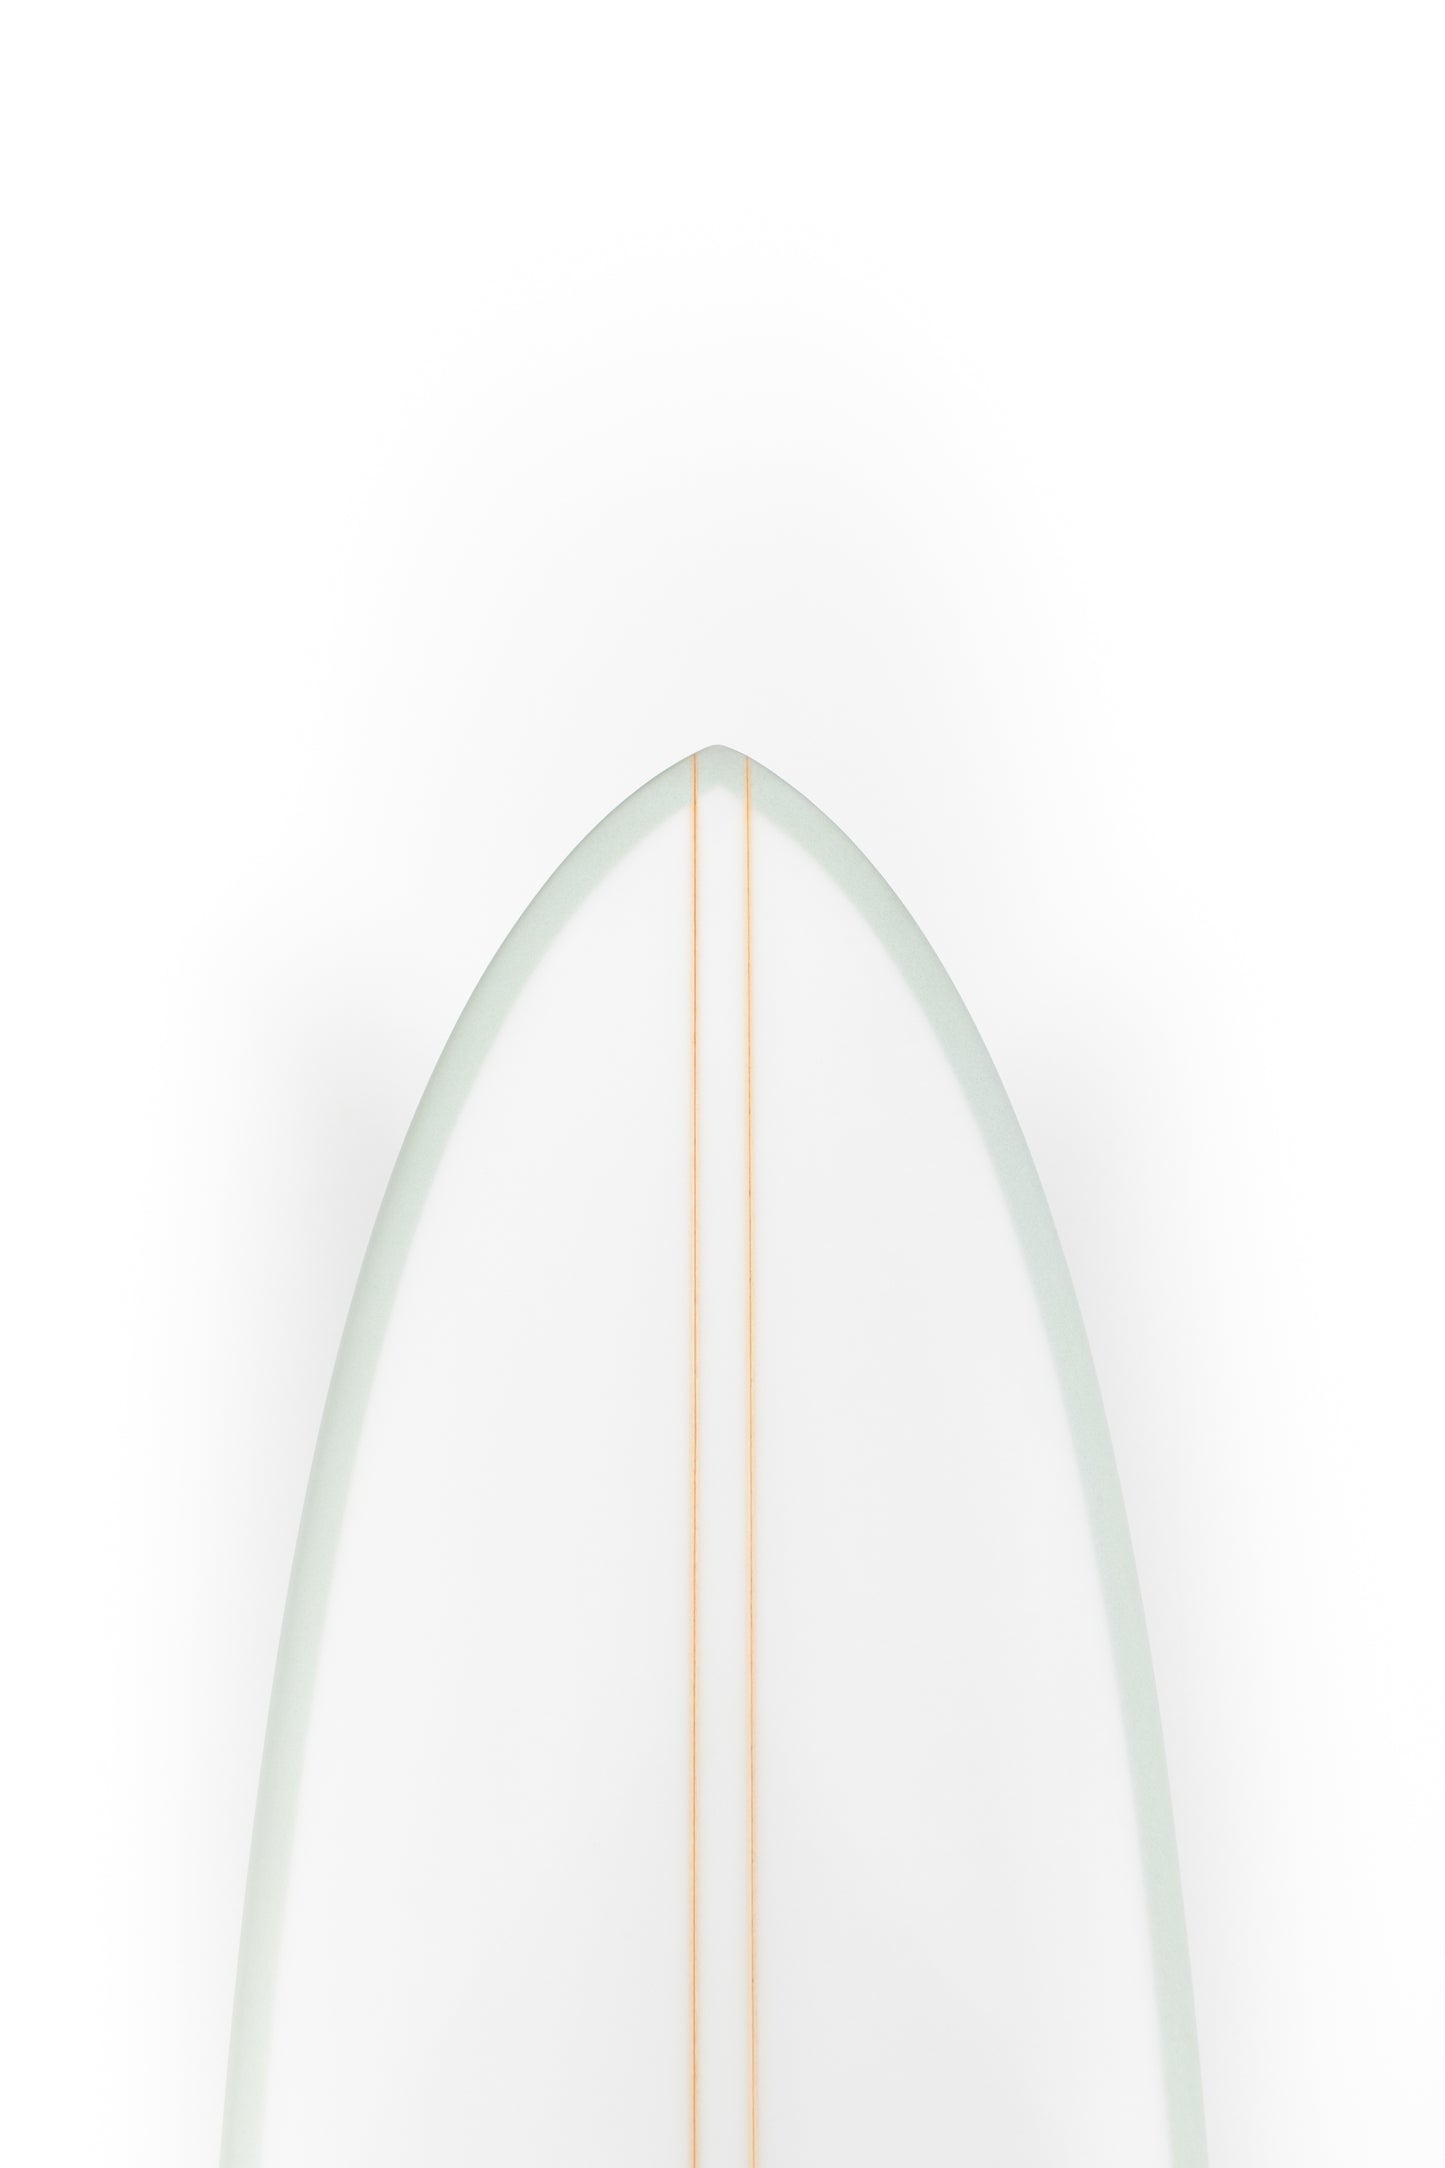 
                  
                    Pukas Surf Shop - HaydenShapes Surfboard - MID LENGTH GLIDER - BLU TILE - 6'10" X 20 5/8" X 2 11/16" - 42.22L
                  
                